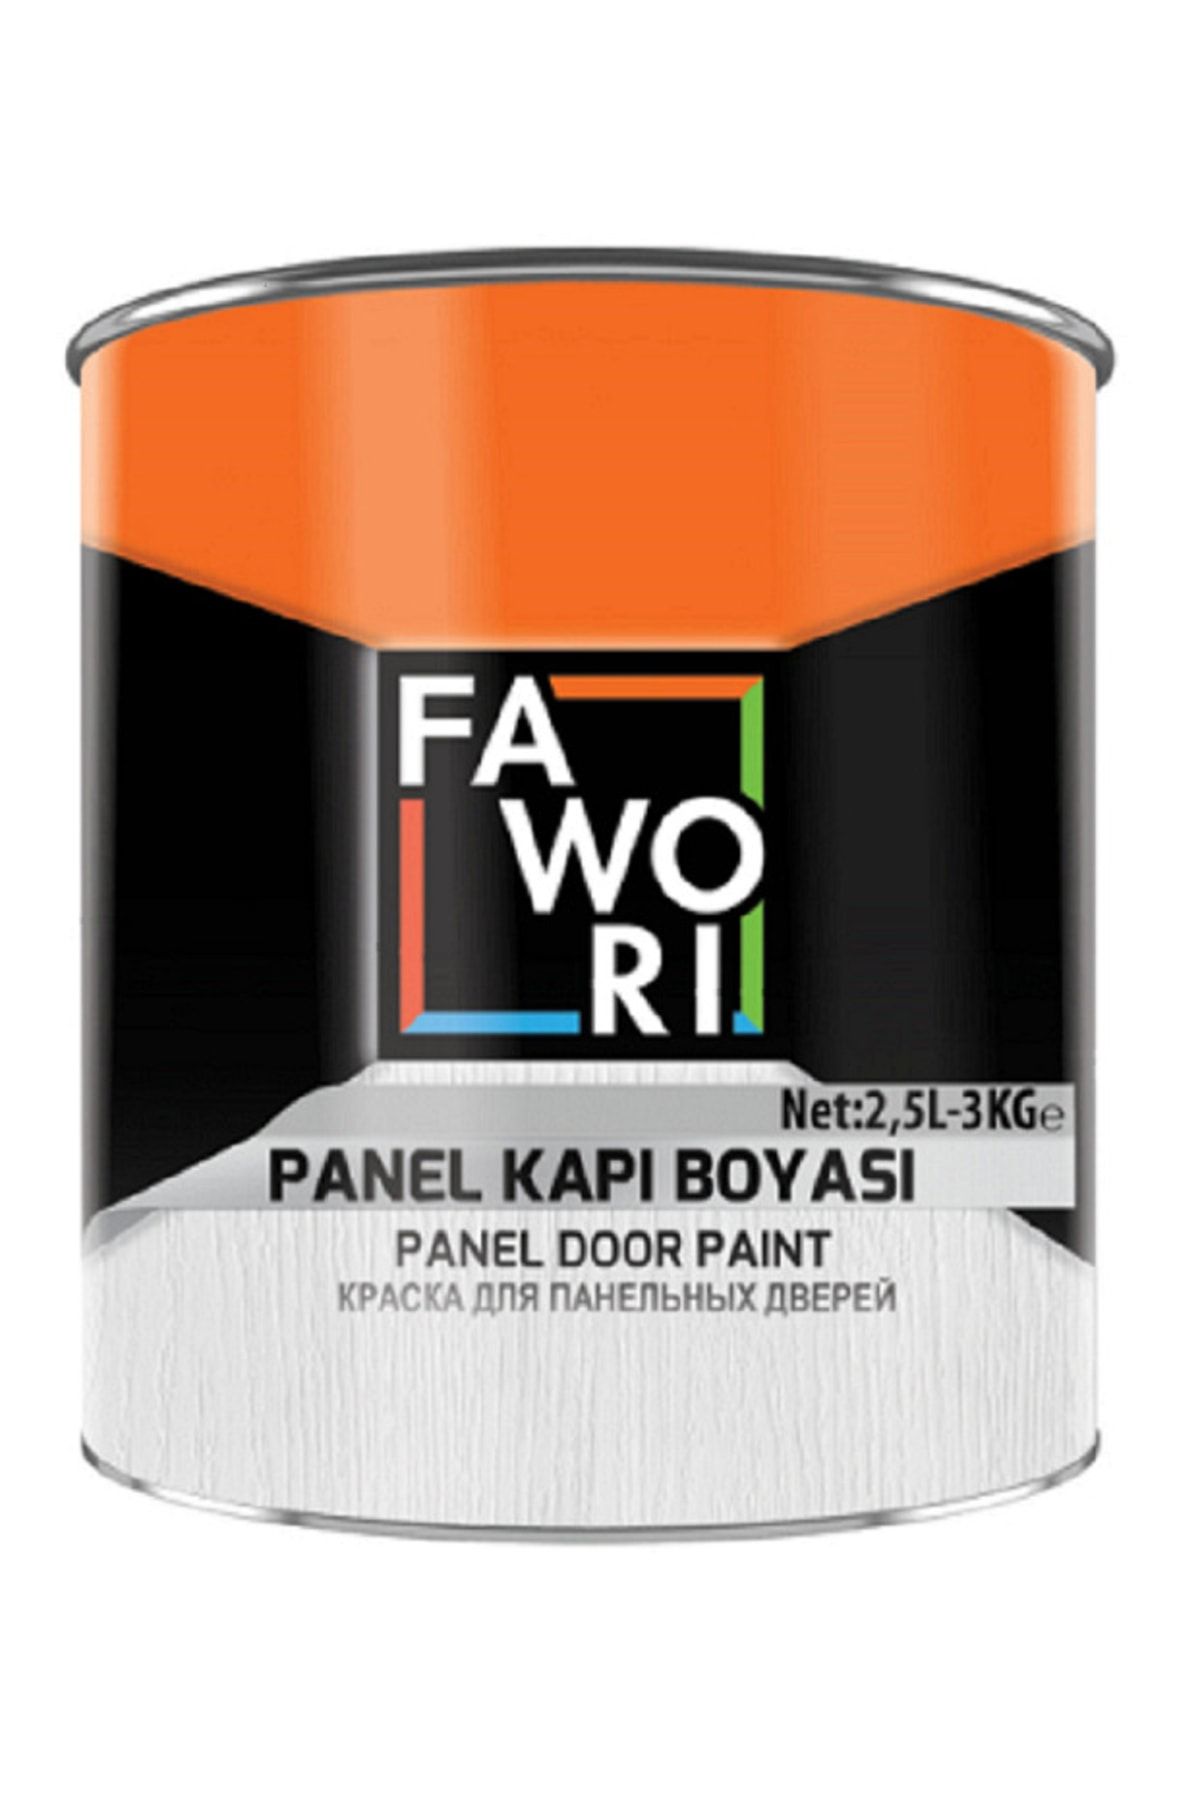 Fawori Panel Kapı Boyası